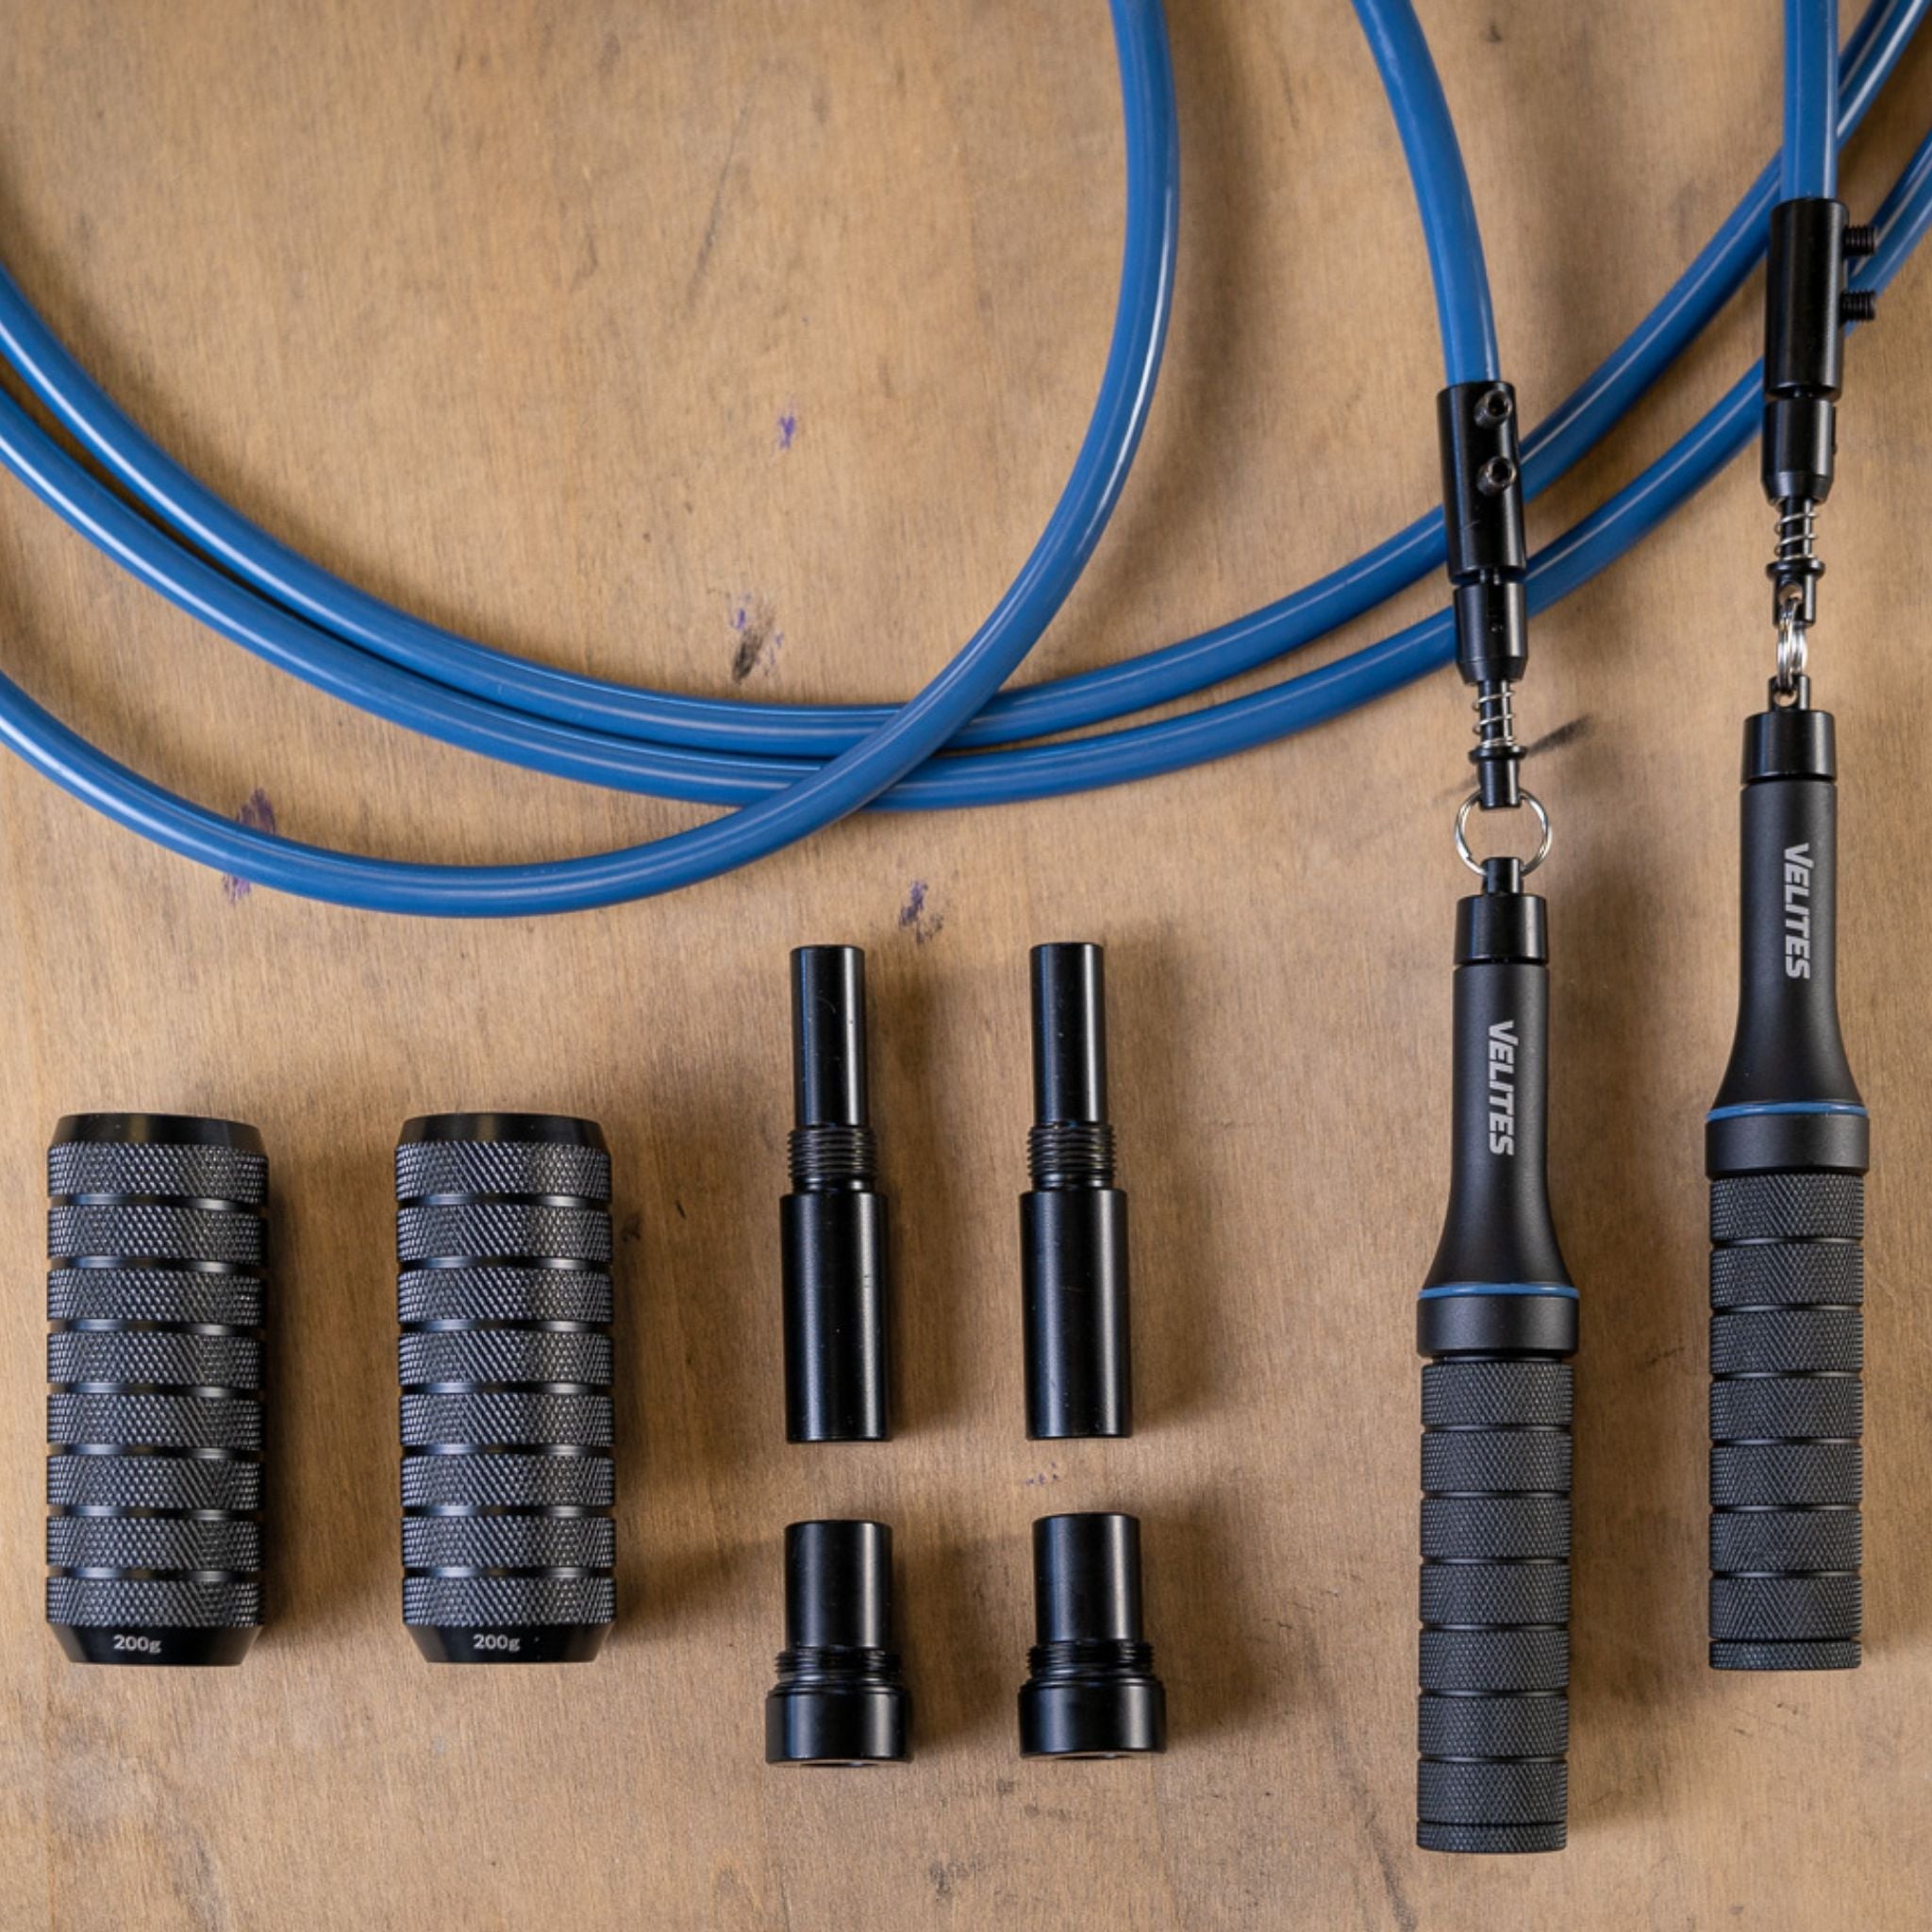 Velites Pack Comba Fire 2.0 + Cables de Velocidad - En un solo pack llévate  los 3 cables disponibles - Para tu entrenamiento funcional, cardio, fuerza  y saltos dobles - Comba Color